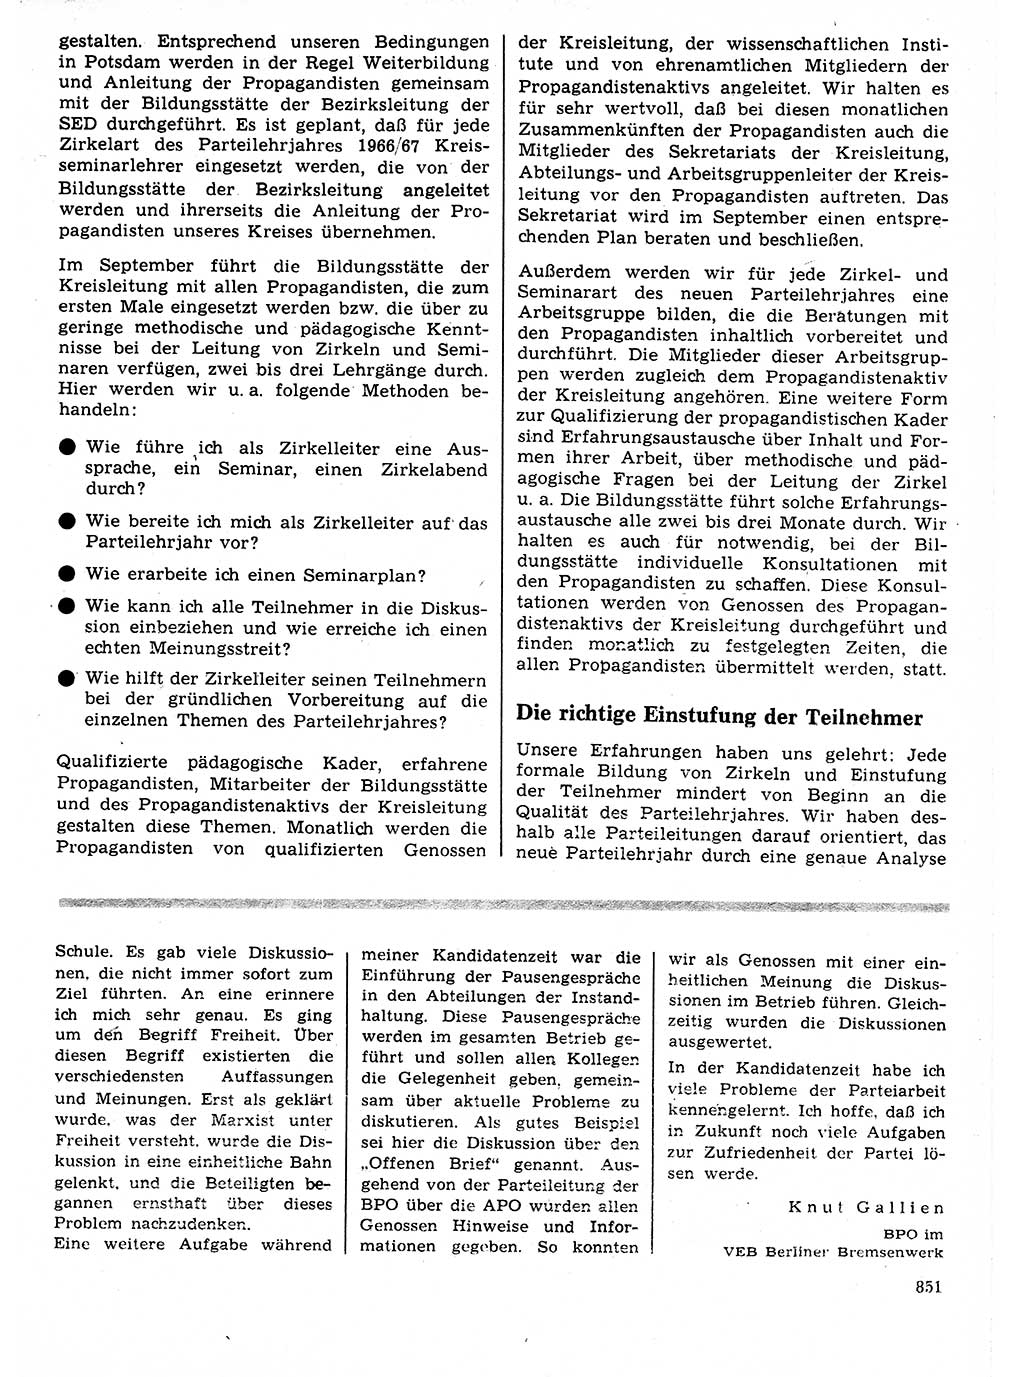 Neuer Weg (NW), Organ des Zentralkomitees (ZK) der SED (Sozialistische Einheitspartei Deutschlands) für Fragen des Parteilebens, 21. Jahrgang [Deutsche Demokratische Republik (DDR)] 1966, Seite 851 (NW ZK SED DDR 1966, S. 851)